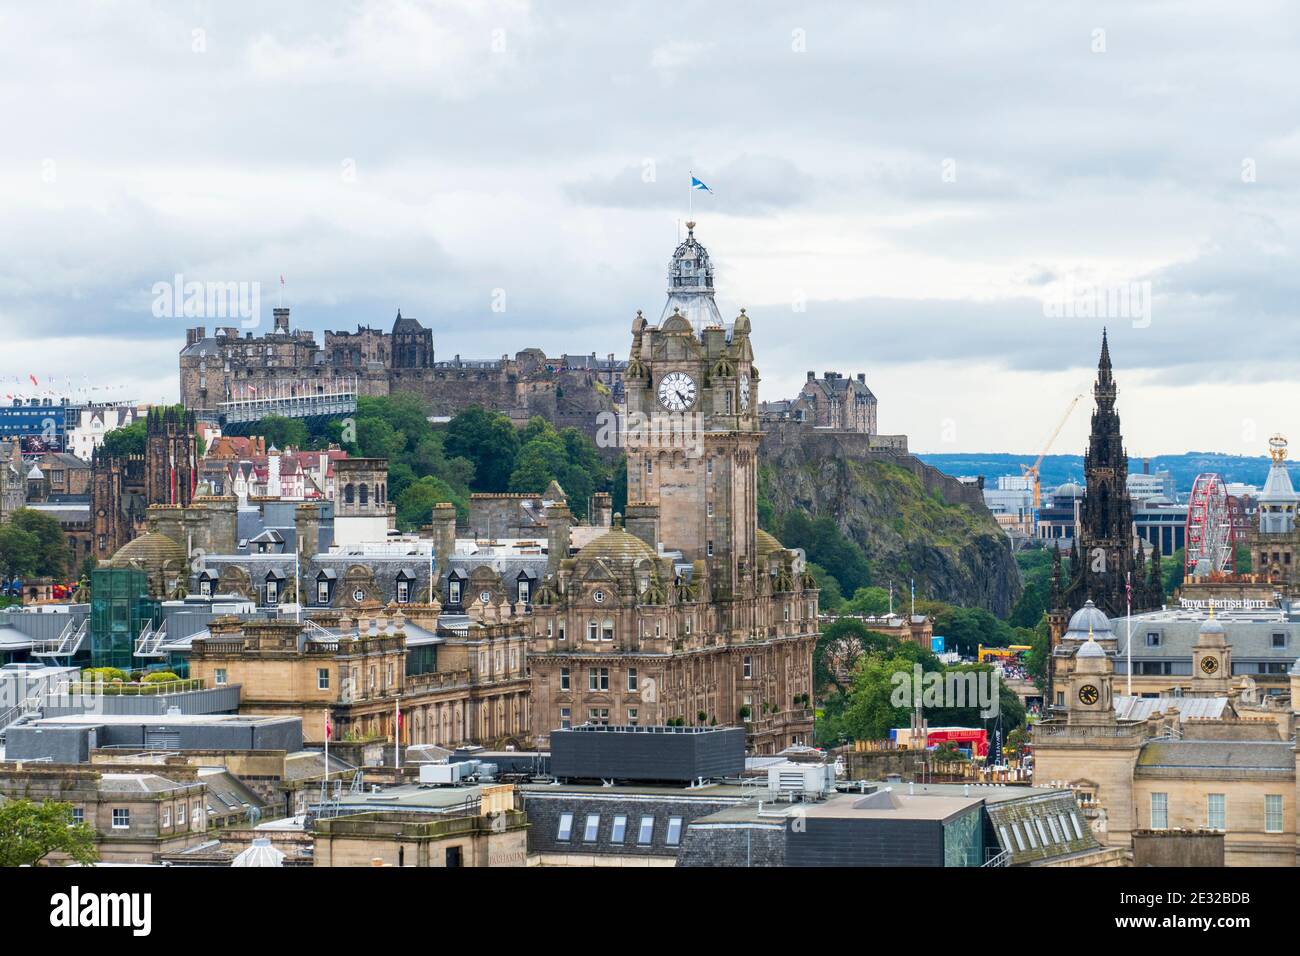 Blick über die Altstadt von Edinburgh mit Schloß, historischem Balmoral Hotel und Scotts Monument Stock Photo